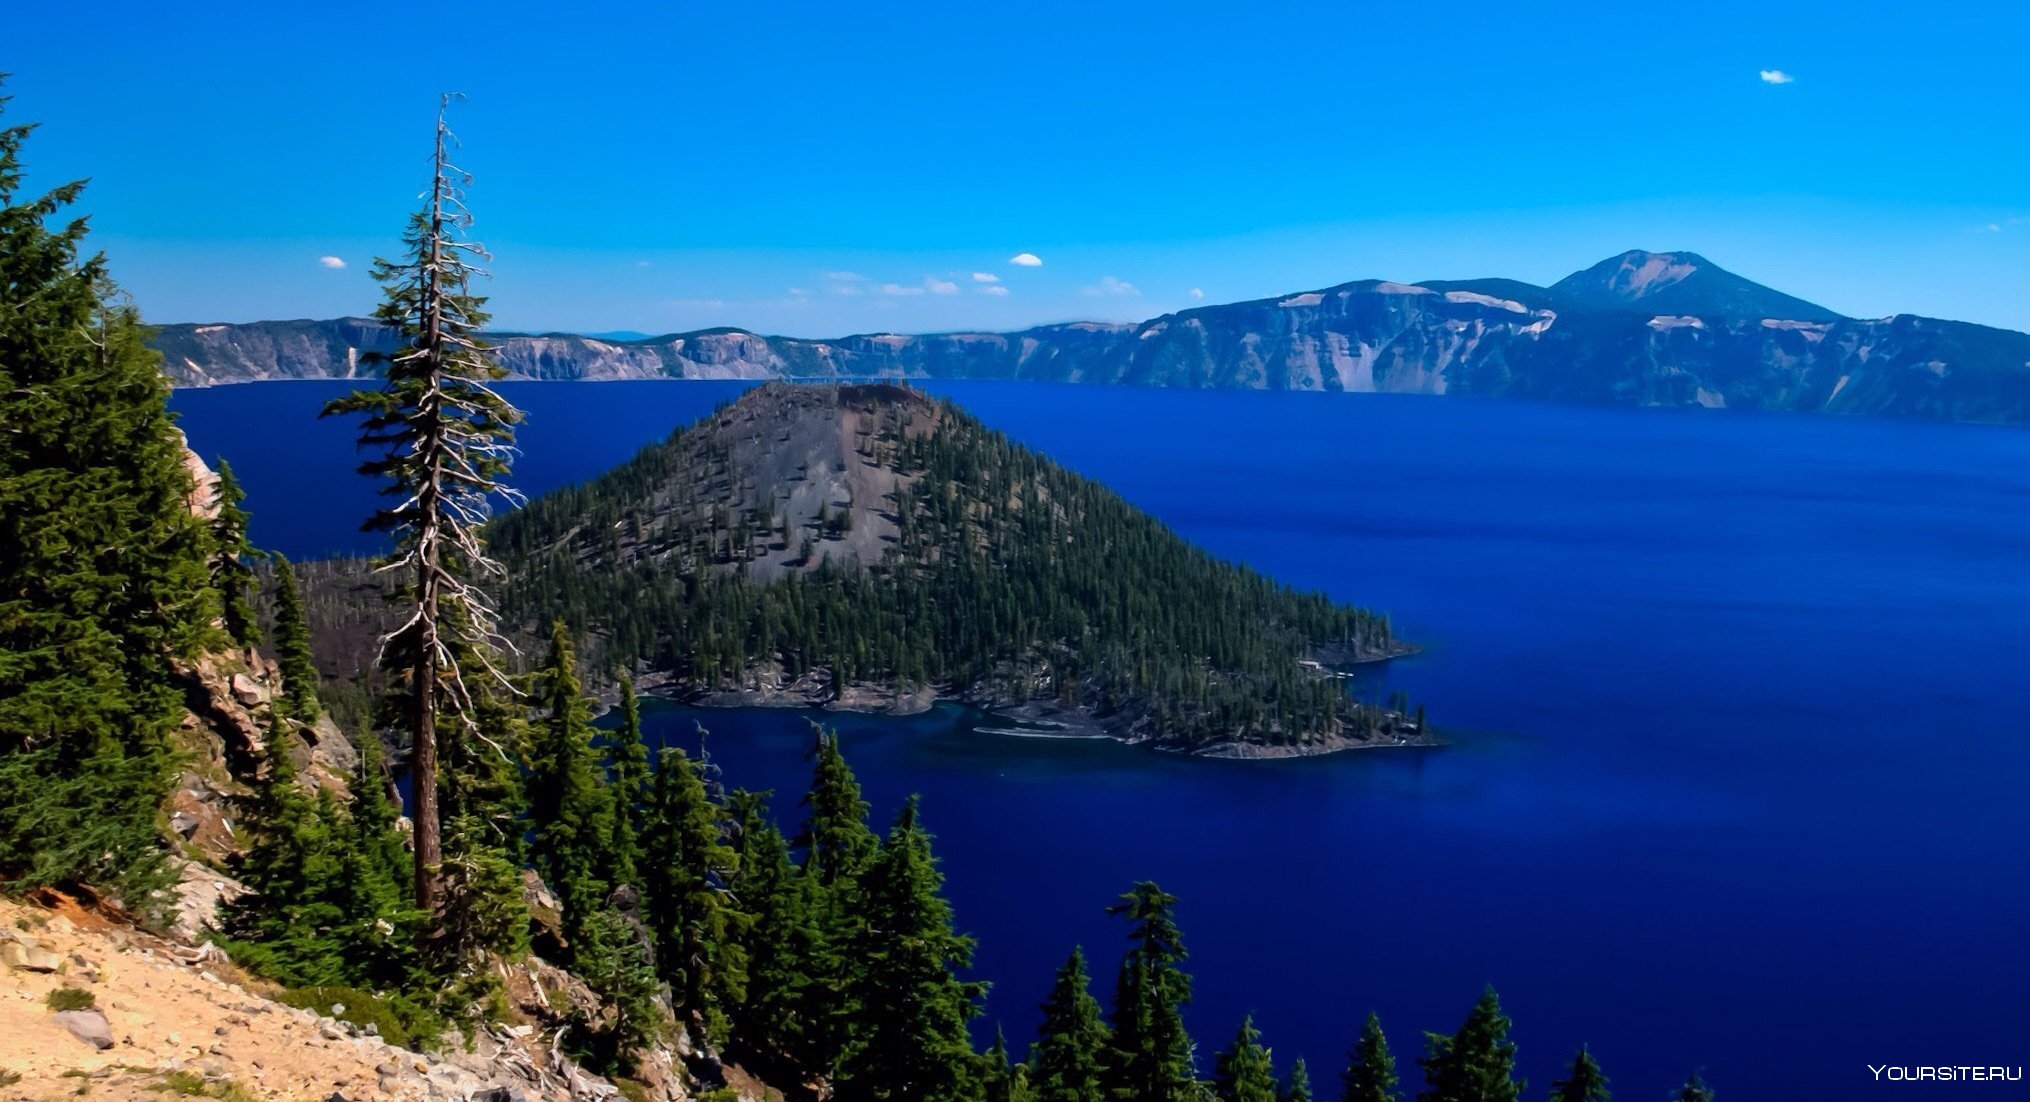 Сообщение о озерах северной америки. Крейтер озеро в Северной Америке. Северная Америка штат Орегон. Озеро Крейтер, штат Орегон, США. Озеро Крейтер Орегон.